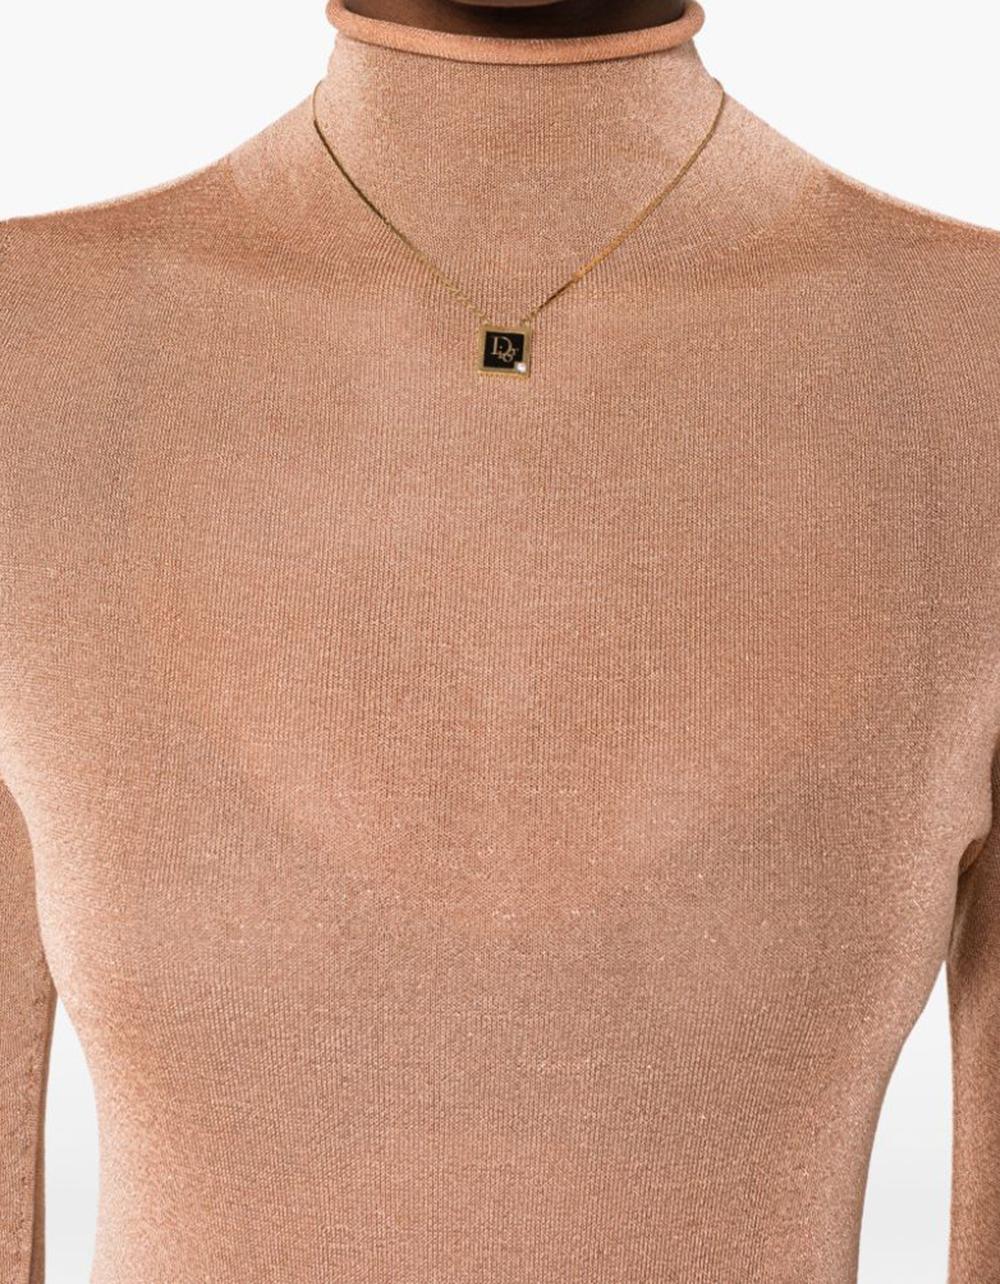 dior locket necklace